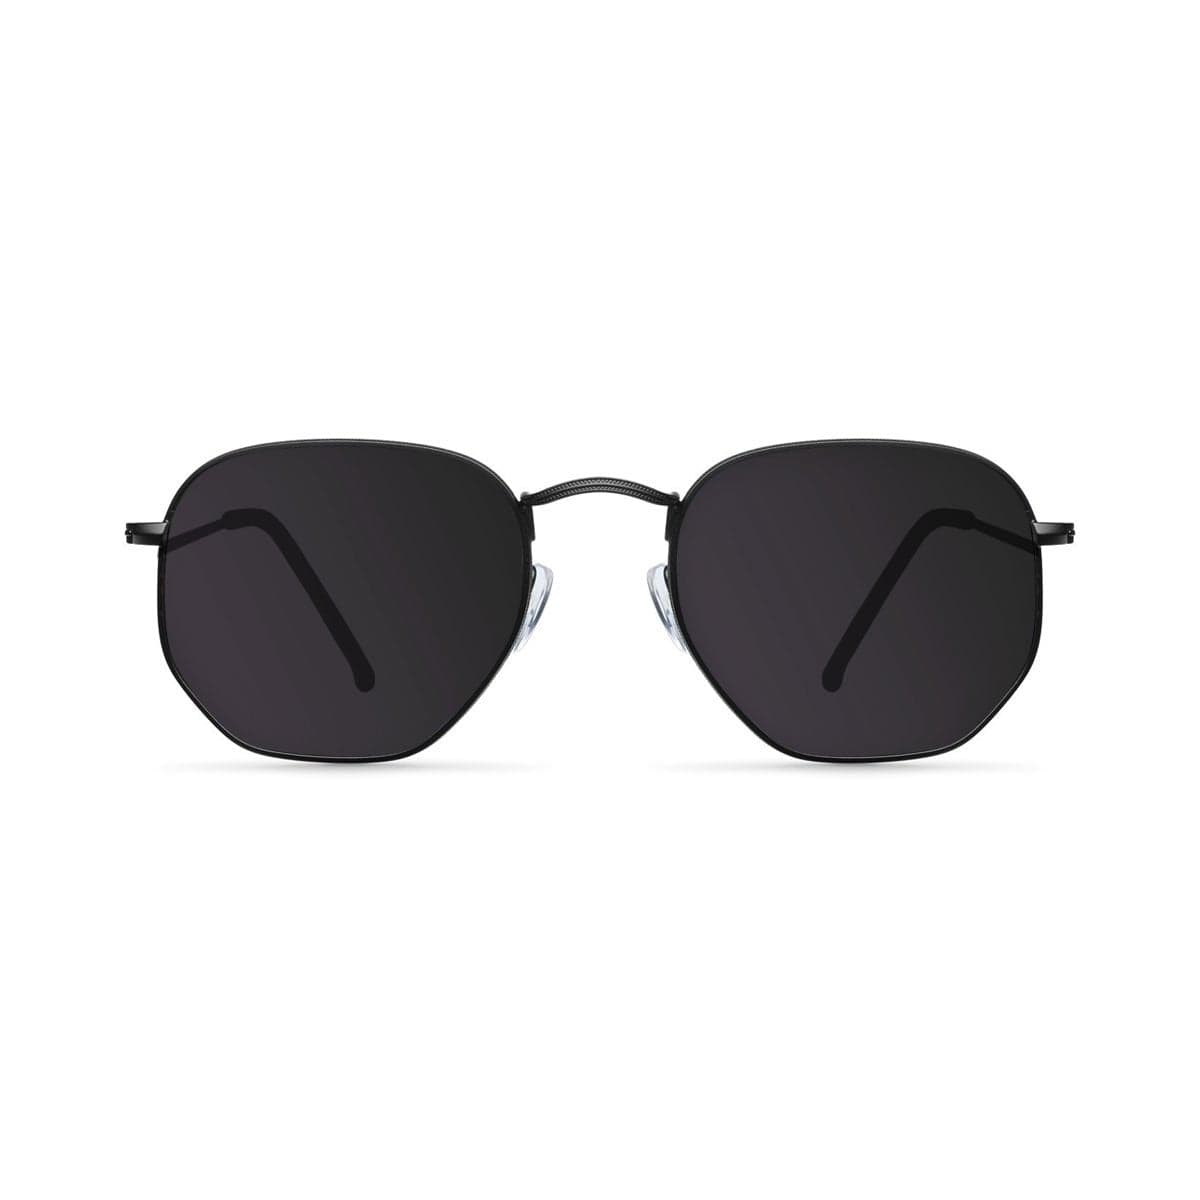 Samui Black / Smoke Sunglasses